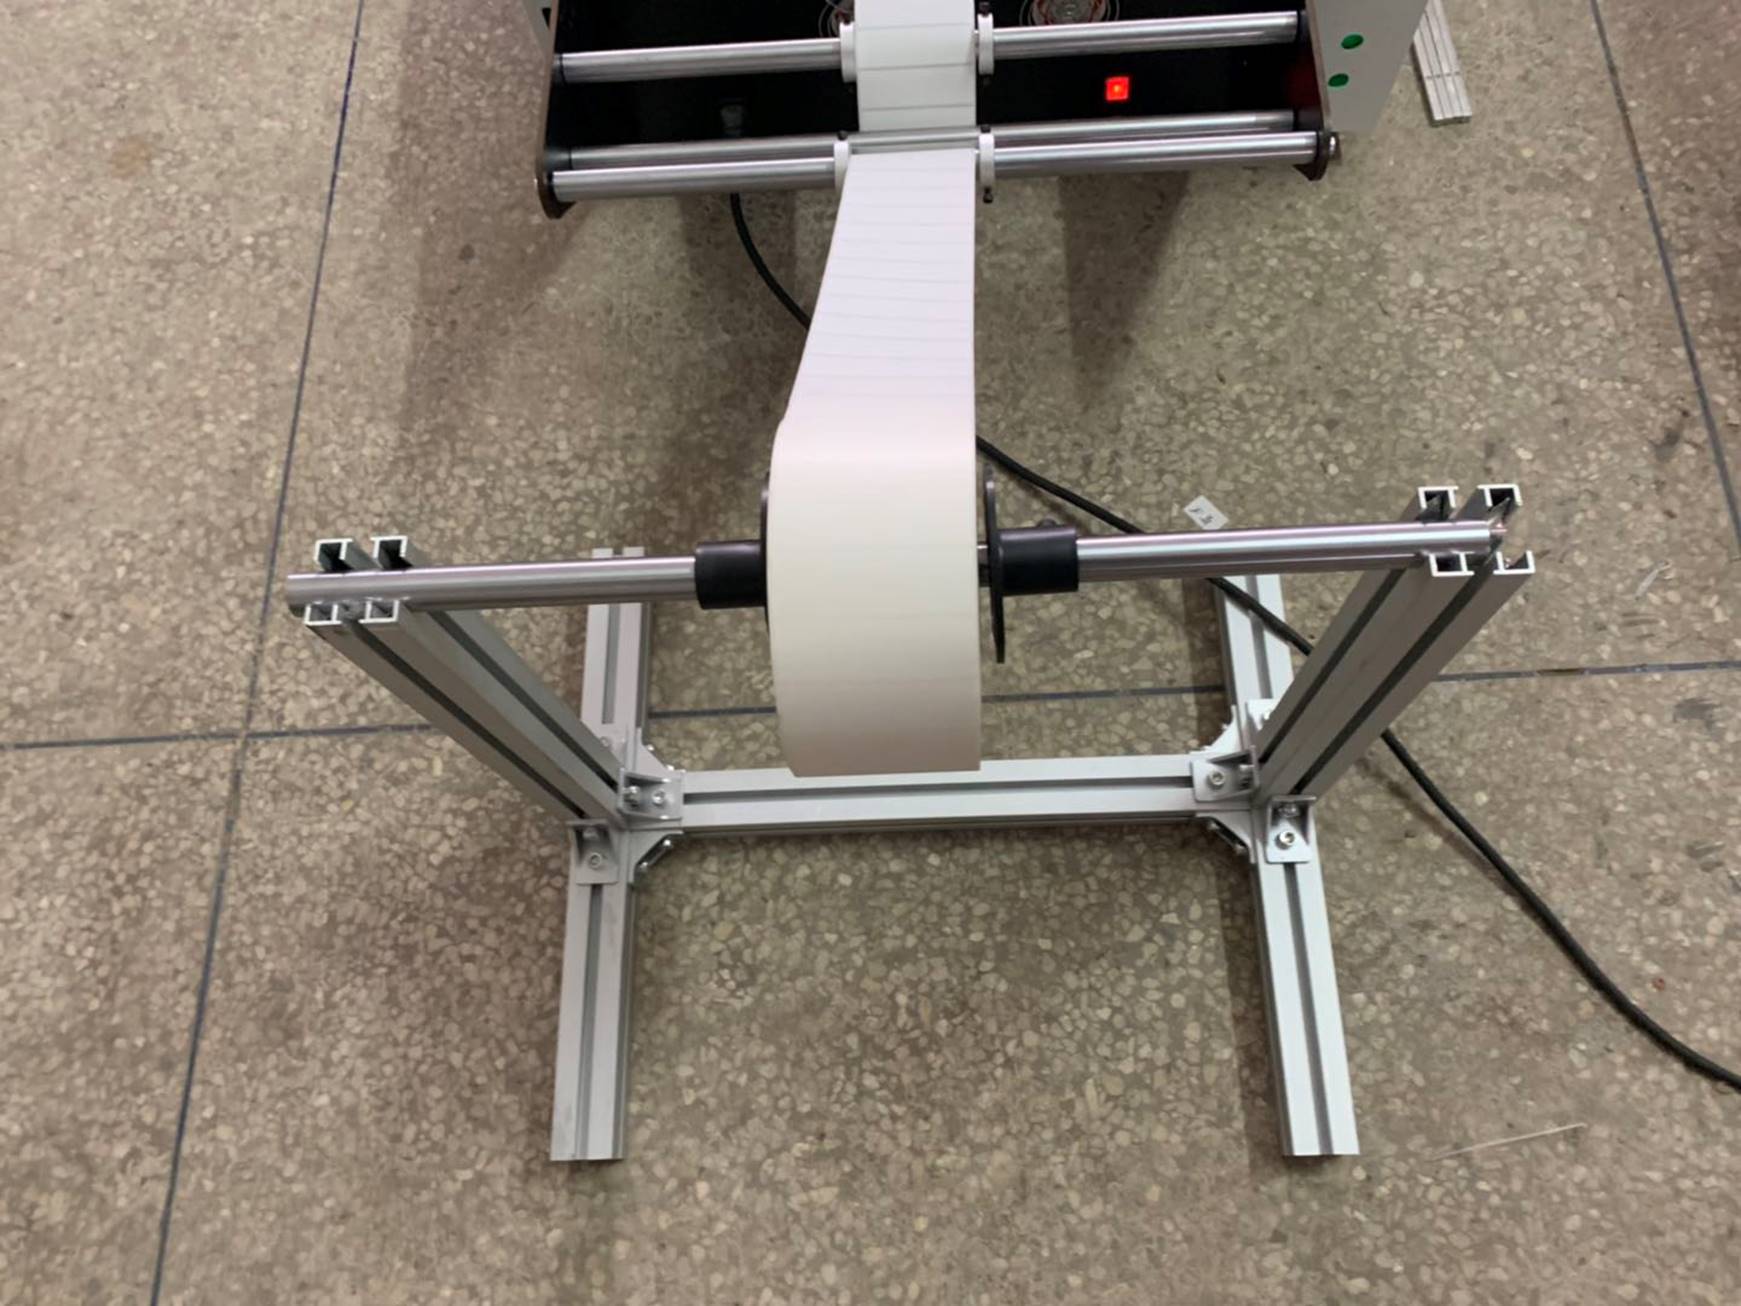 Листорезальная машина QD-400-table- подробные фотографии– 4-я машина из серии - листорезки - флаторезки в комплекте с отдельной стойкой размотки роля. Фотография 6.